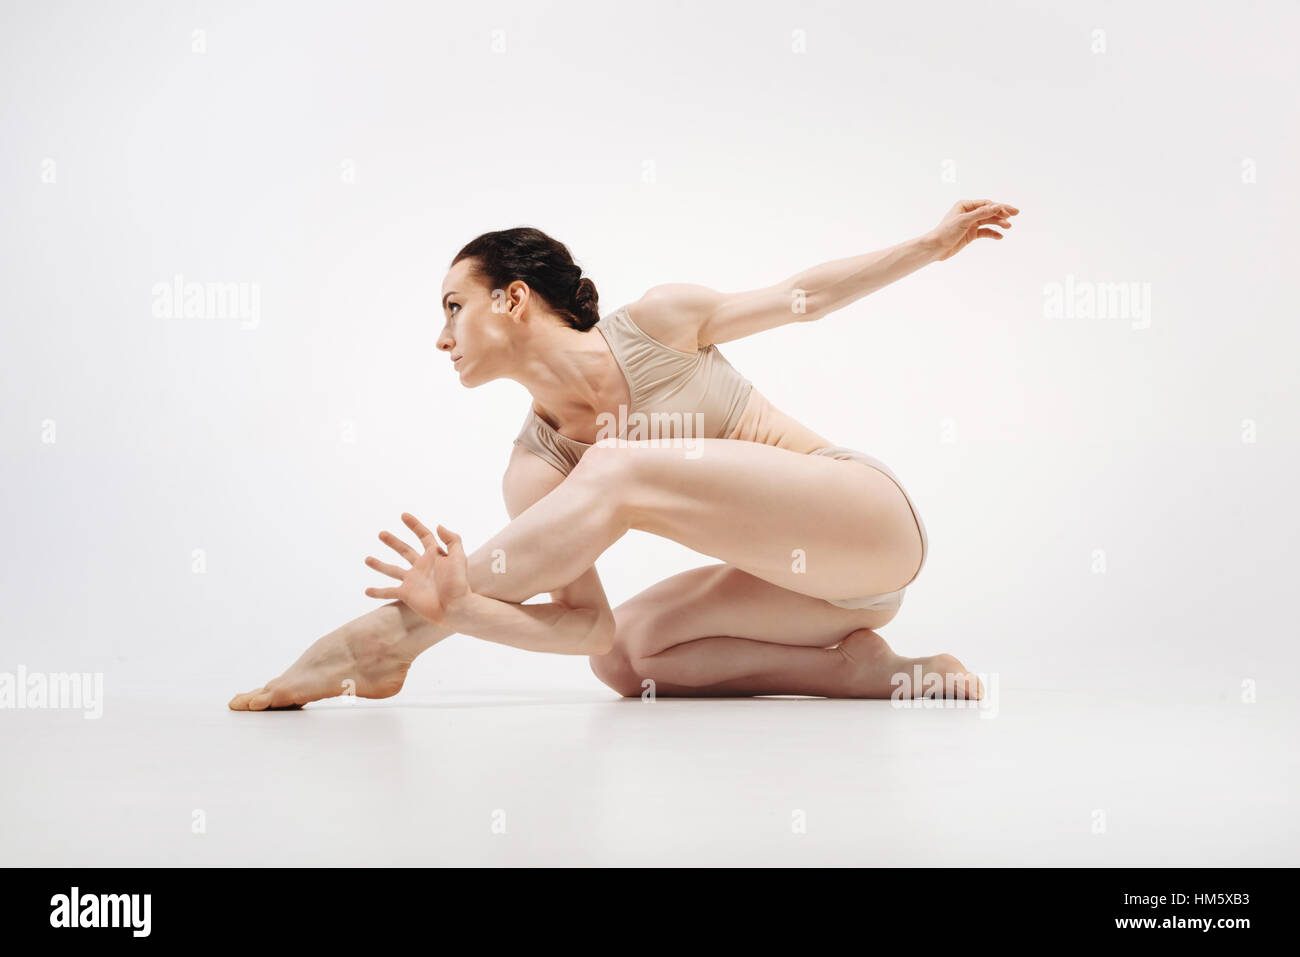 Muscoloso giovane atleta stretching in colore bianco studio Foto Stock